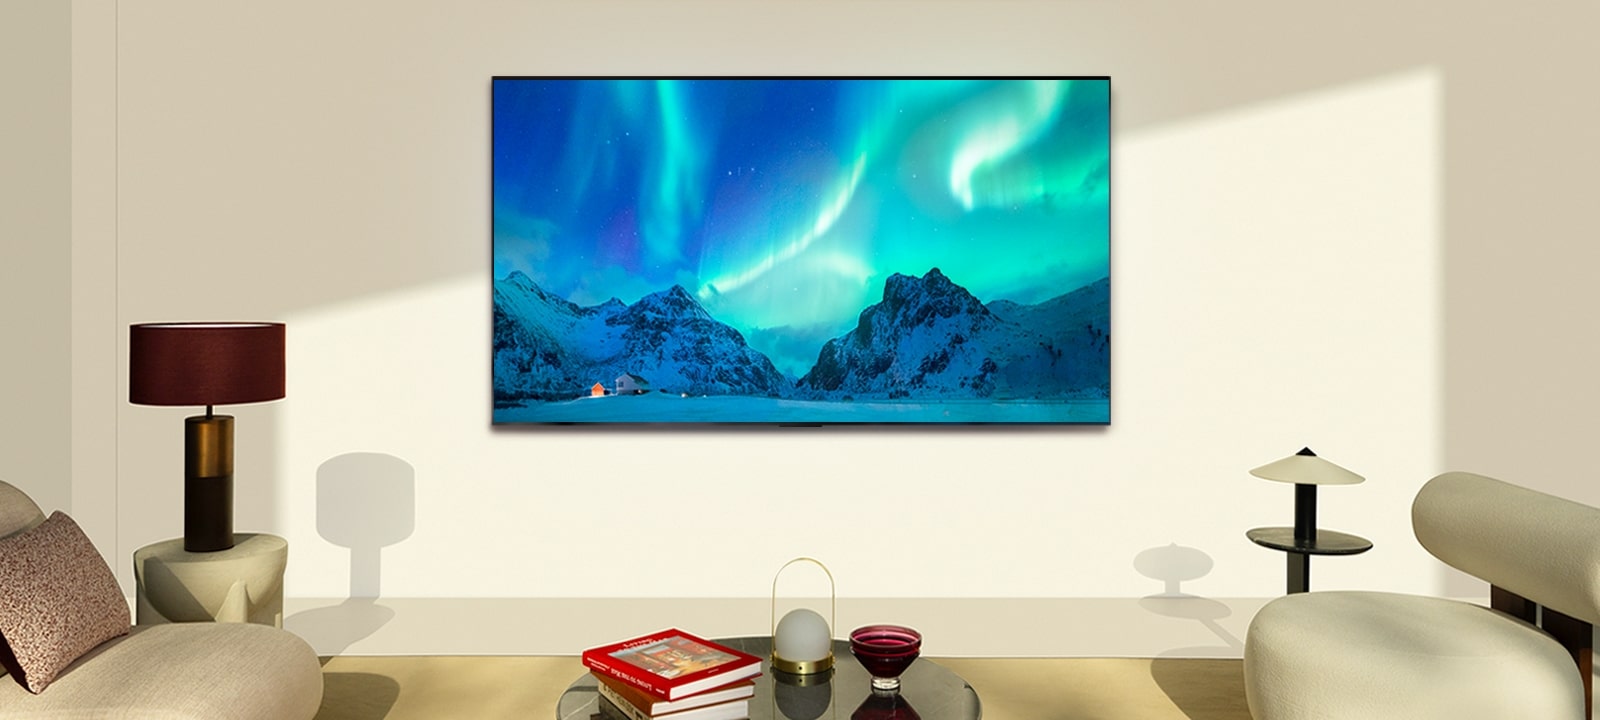 LG OLED TV en un moderno salón durante el día. La imagen en pantalla de la aurora boreal se muestra con los niveles de brillo ideales.